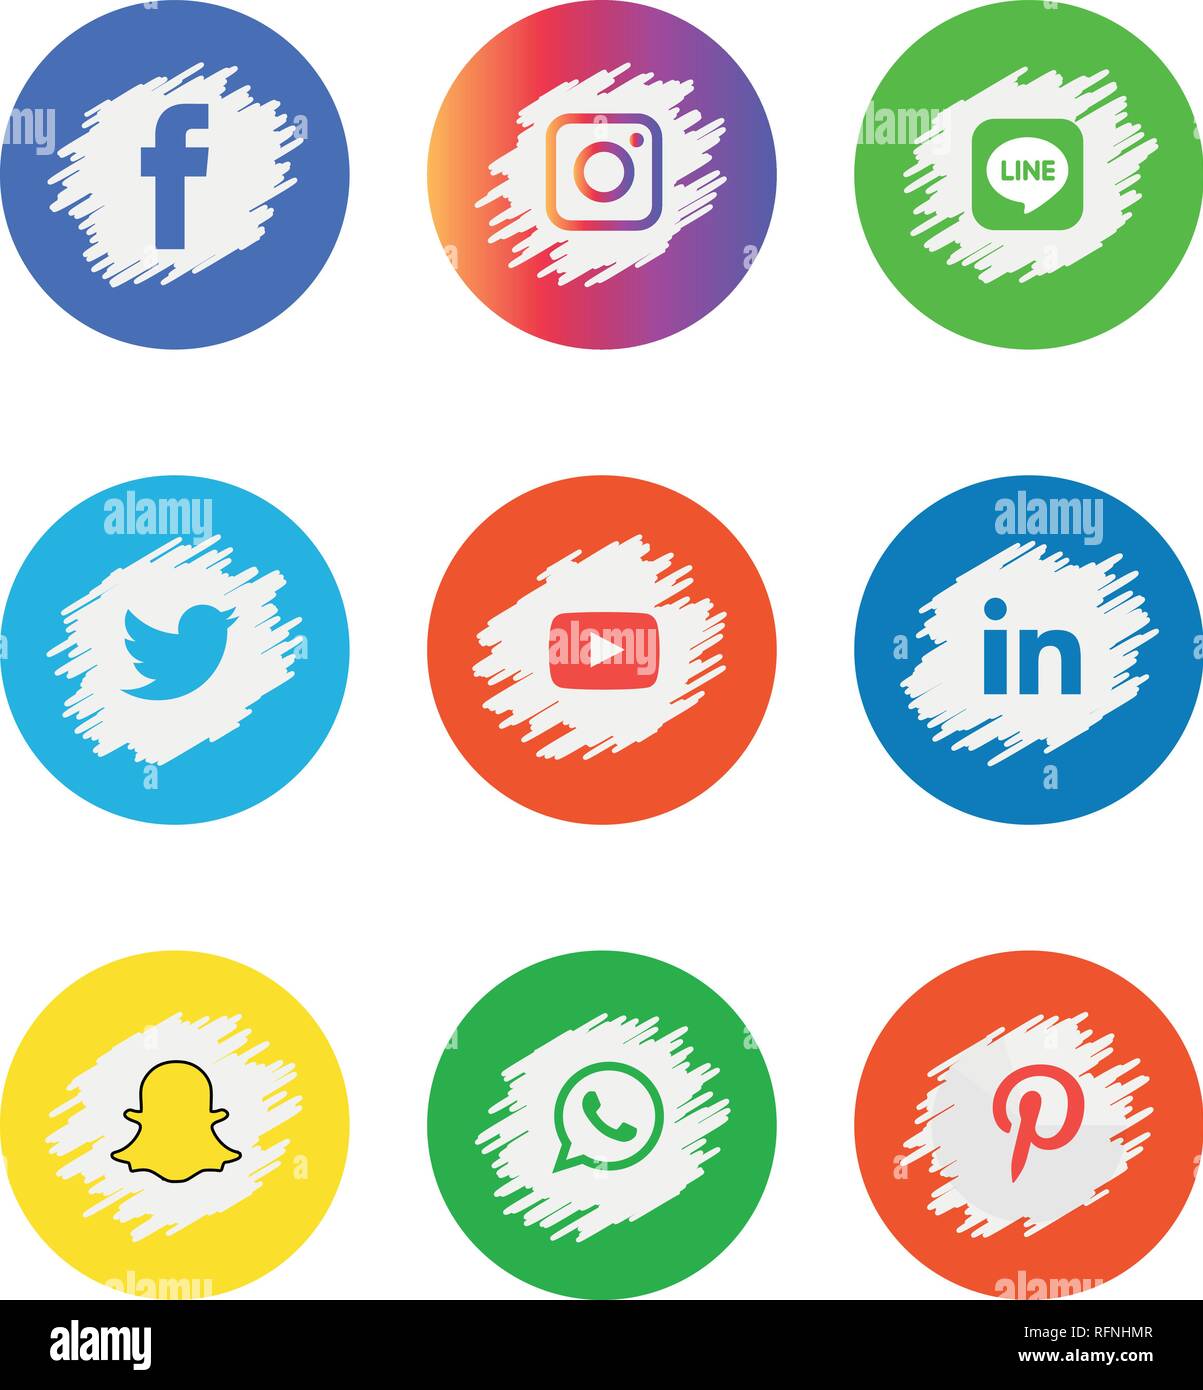 Social media icons set Logo Vector Illustrator facebook, instagram, twitter, whatsapp, google plus, google+, pinterest, linkedin, messenger, Stock Vector